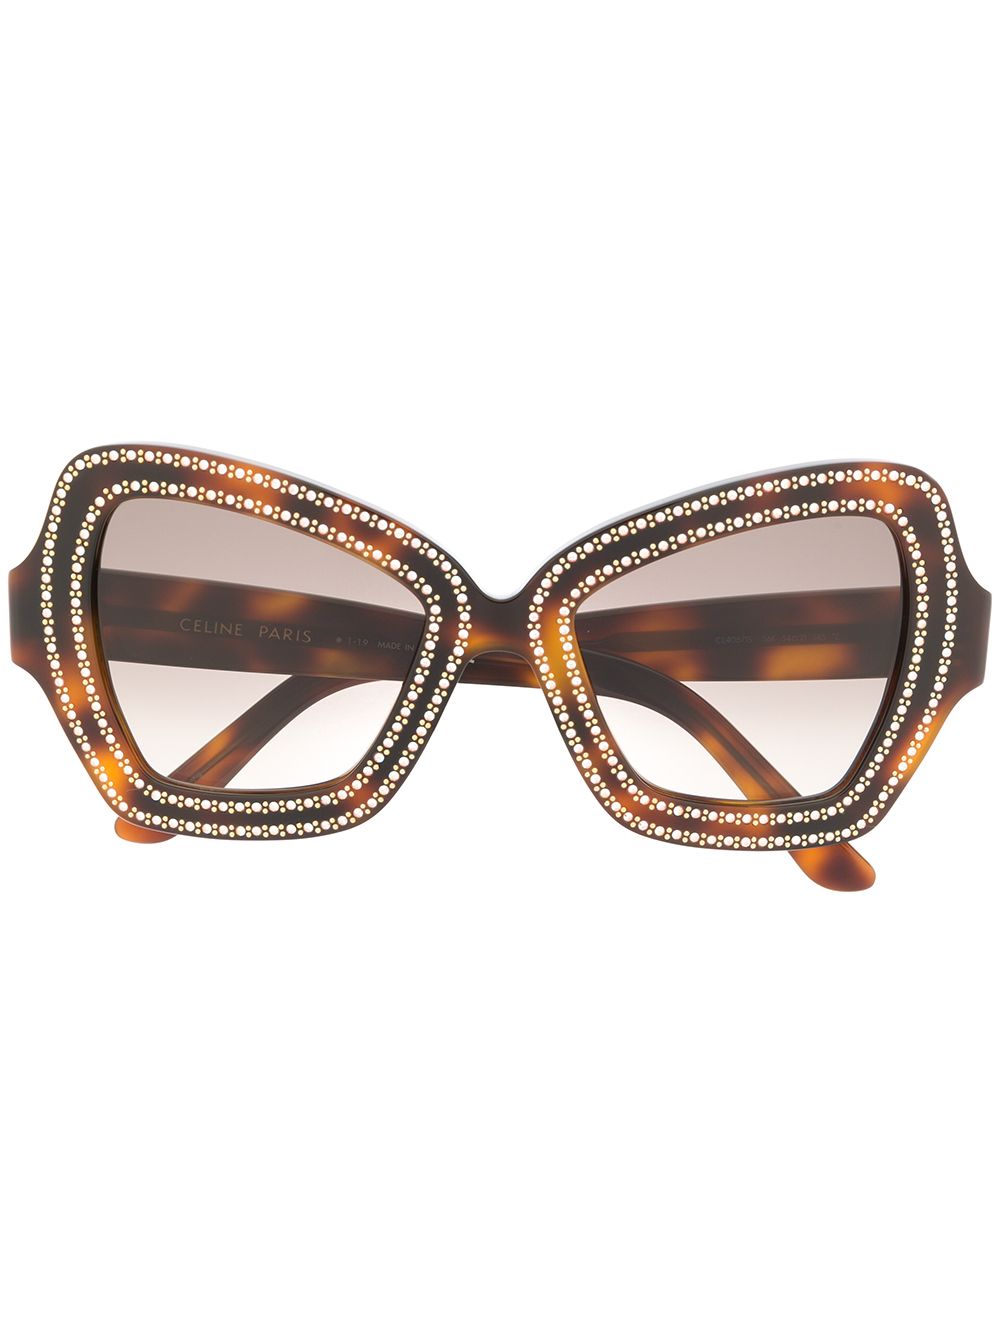 фото Celine eyewear декорированные солнцезащитные очки